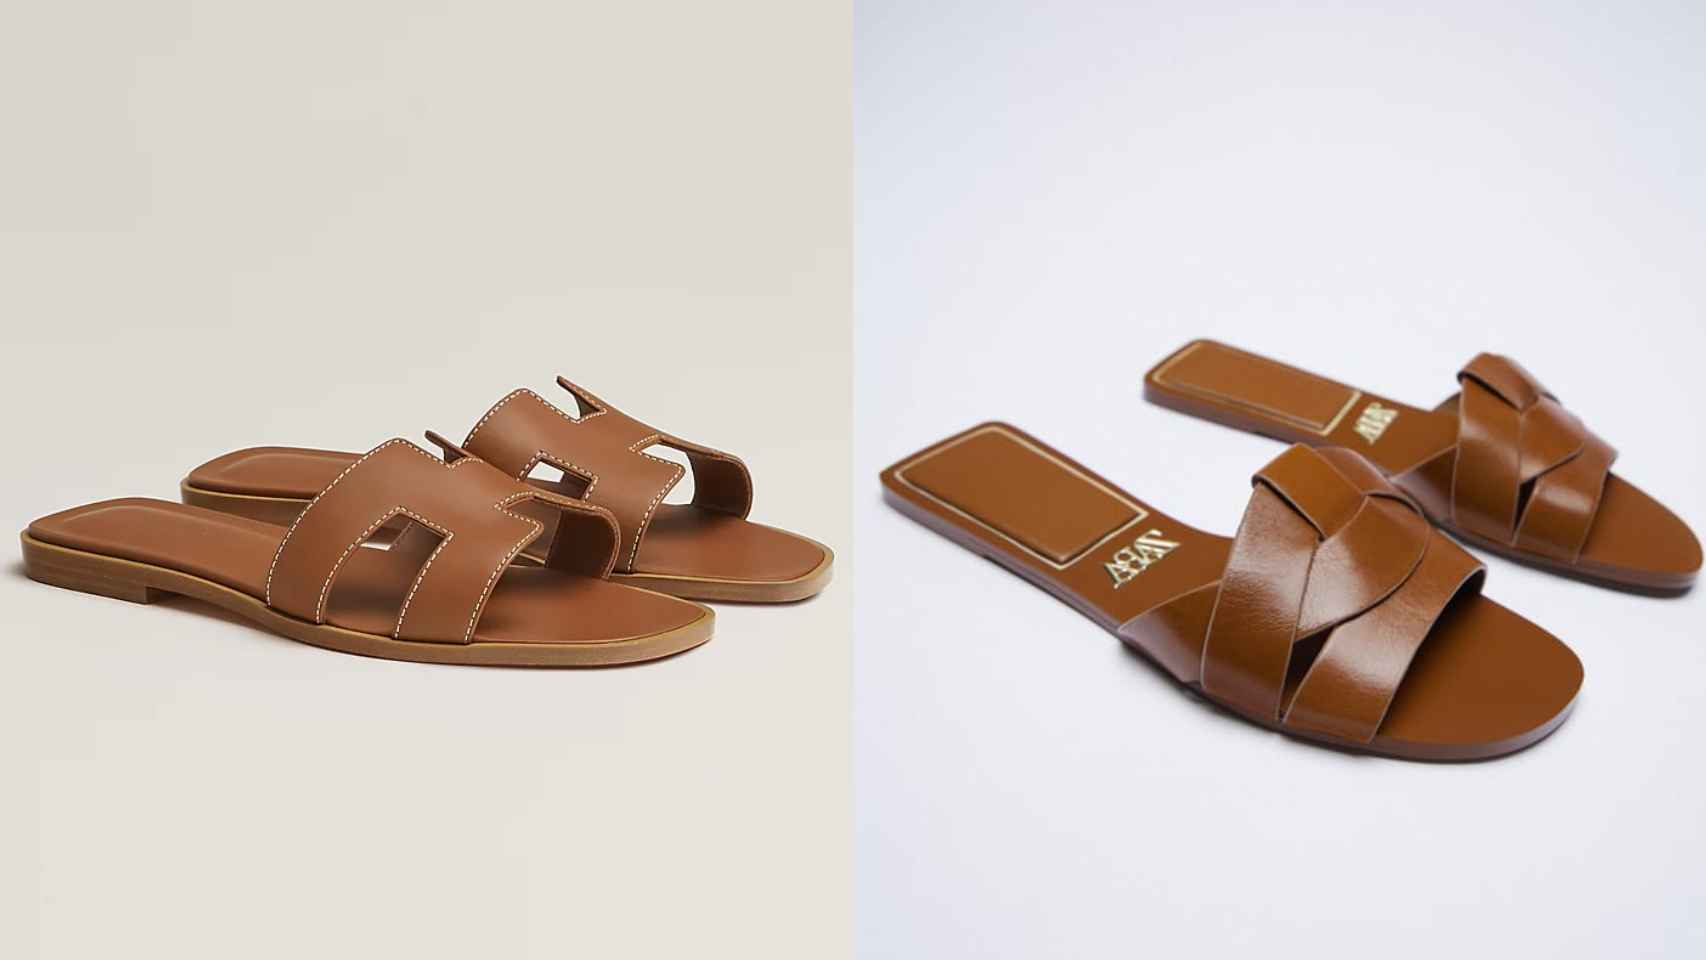 Las sandalias de Hèrmes, a la izquierda, y a la derecha las de Zara.